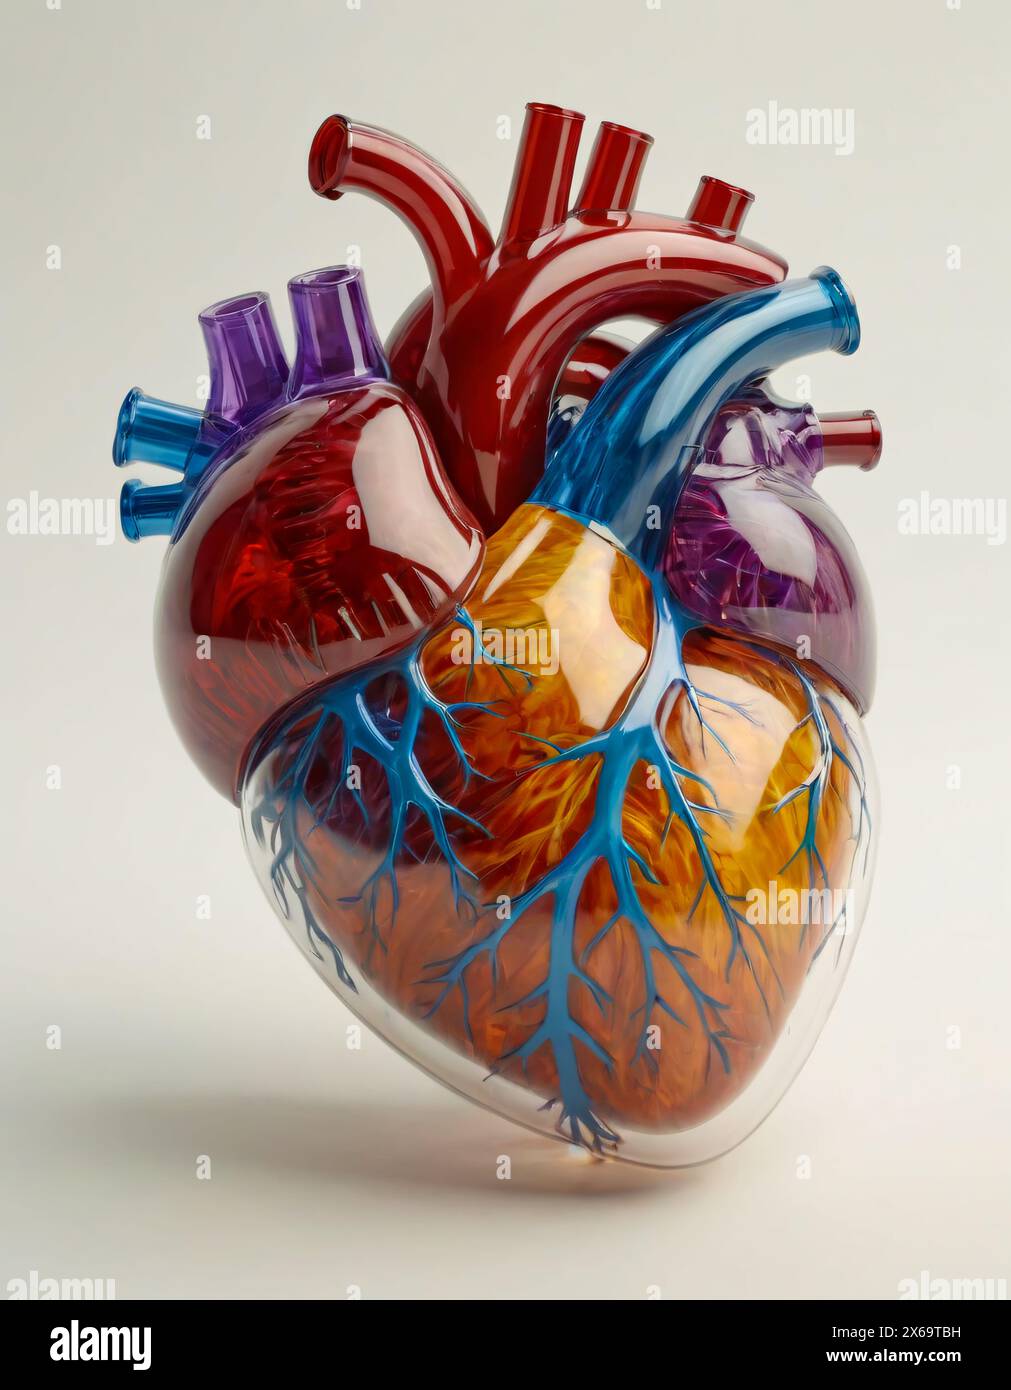 Menschliches Herz, semirealistische Darstellung. Konsistenz und Farbe der Bonbons Stockfoto